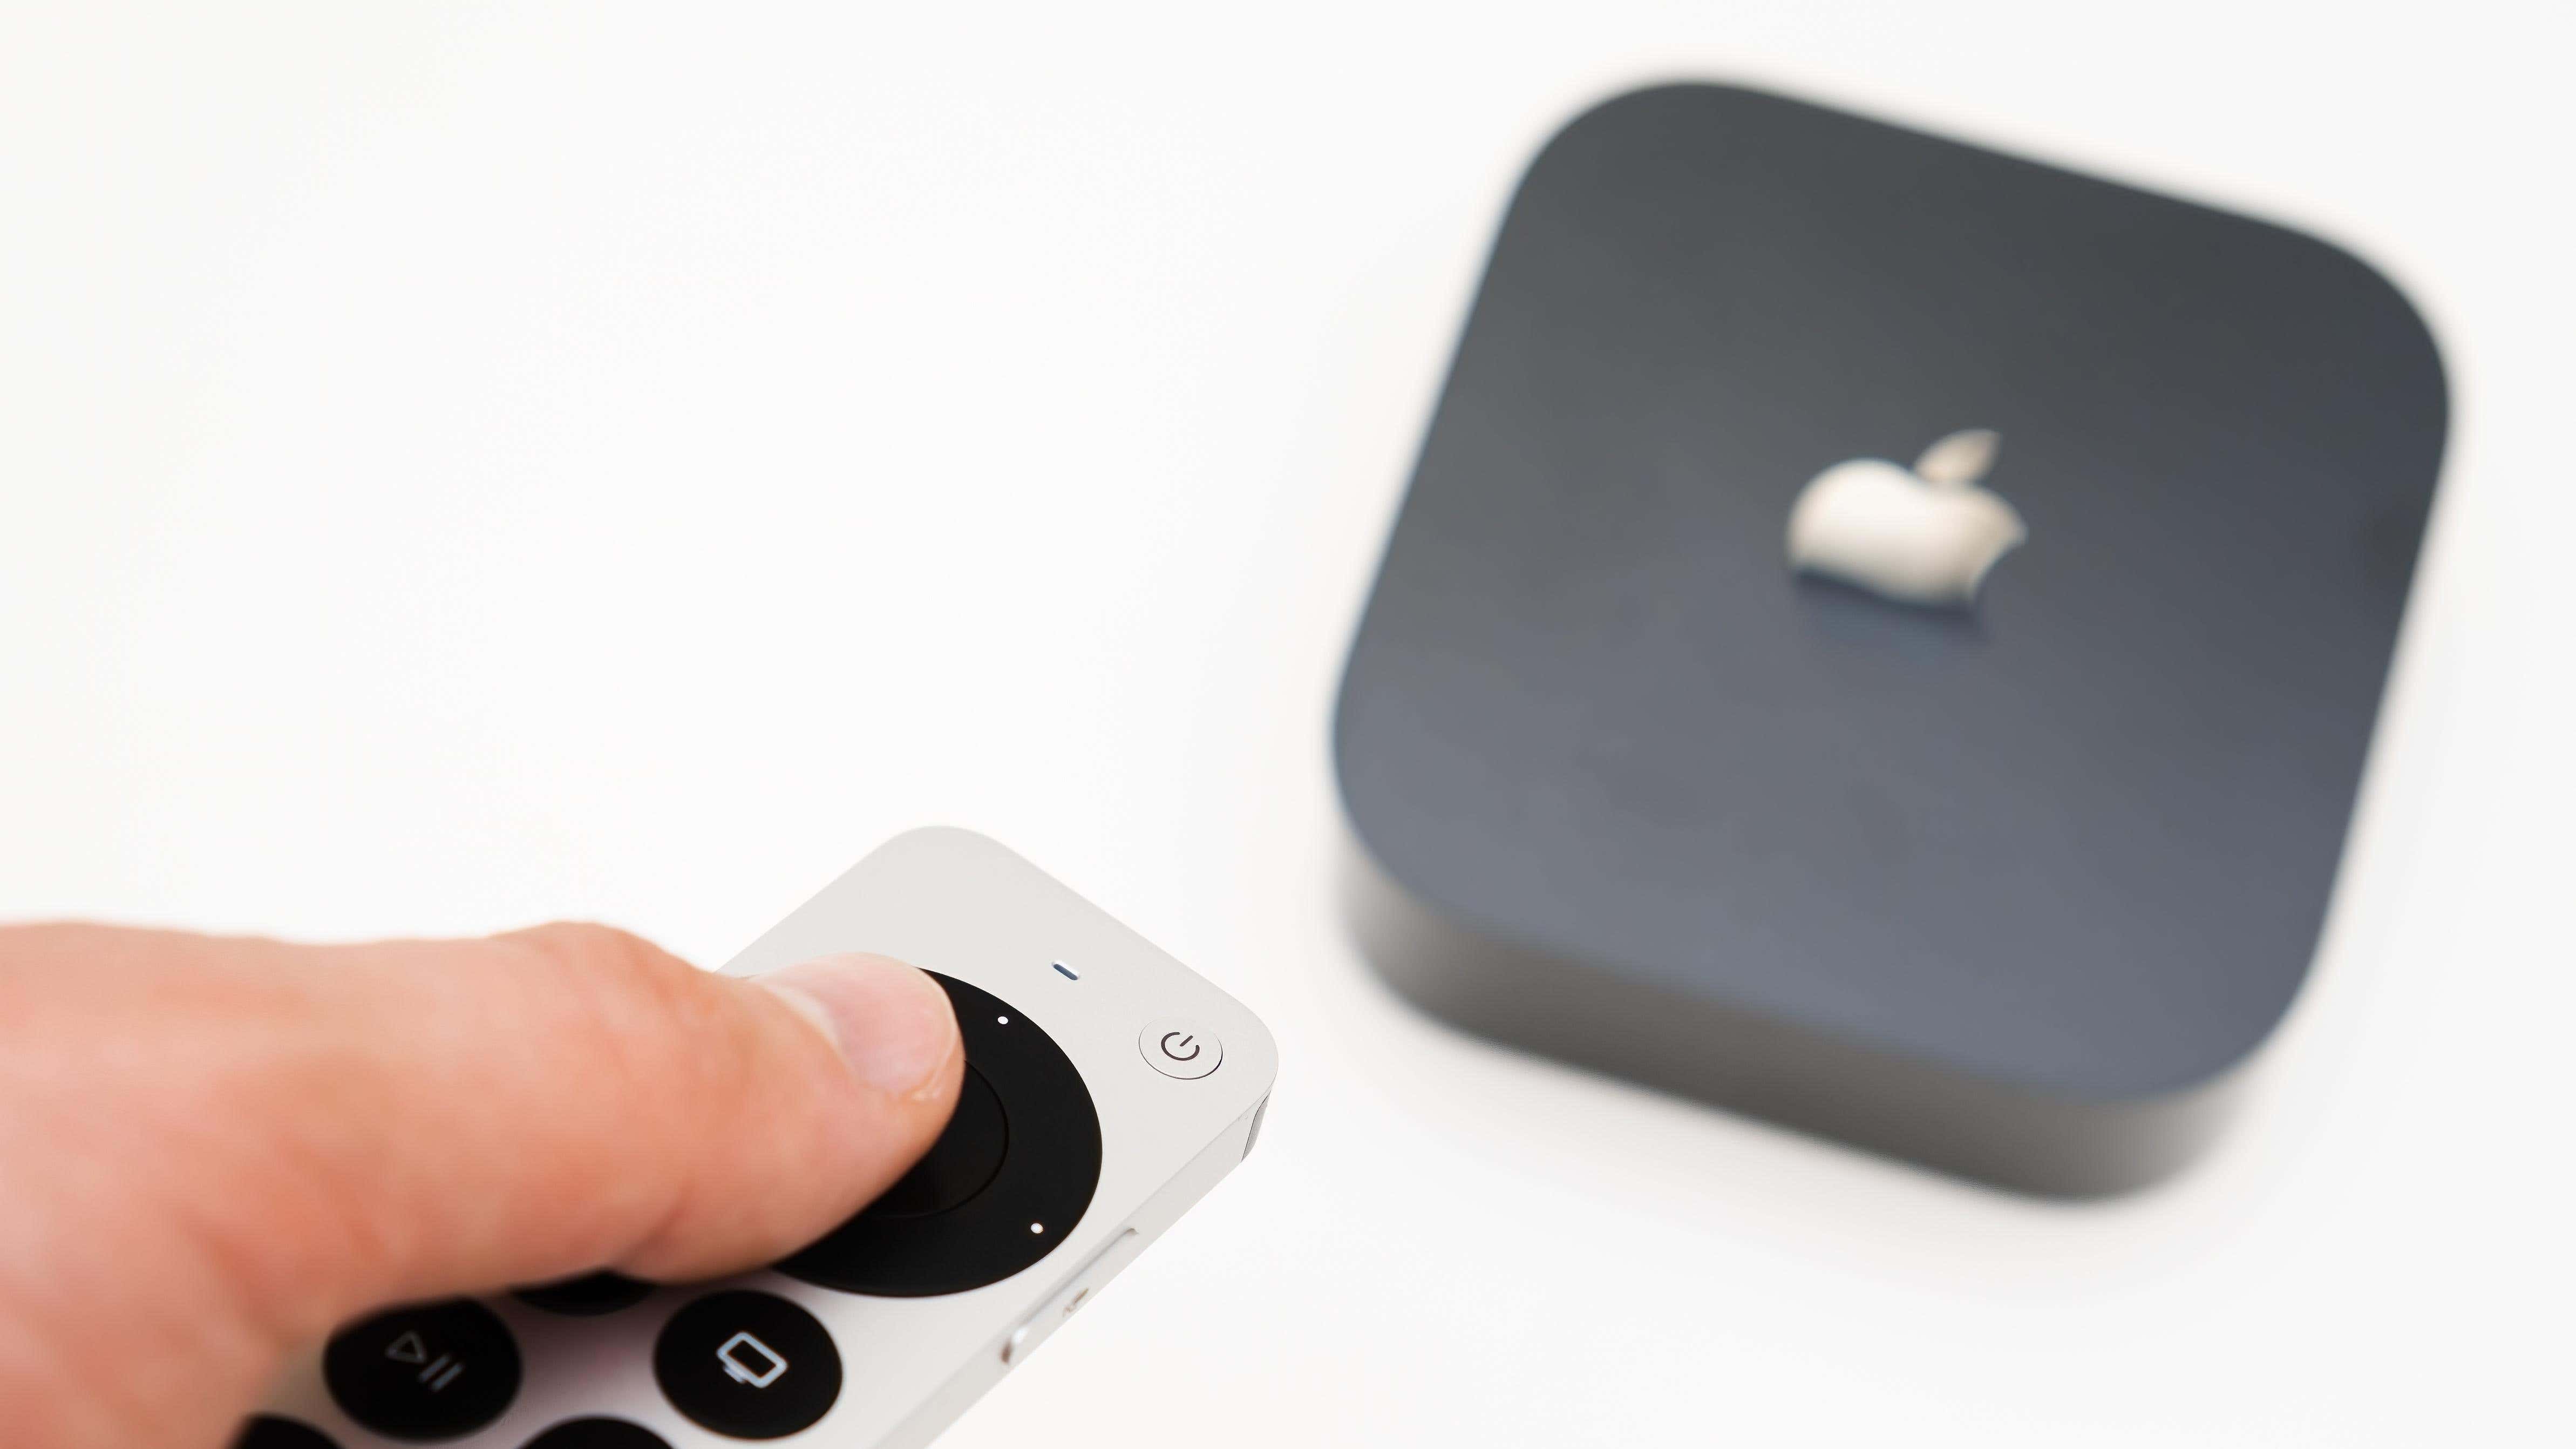 Adam eli uzaktan kumandayı kullanarak yeni siyah Apple TV 4K medya akışını açıyor